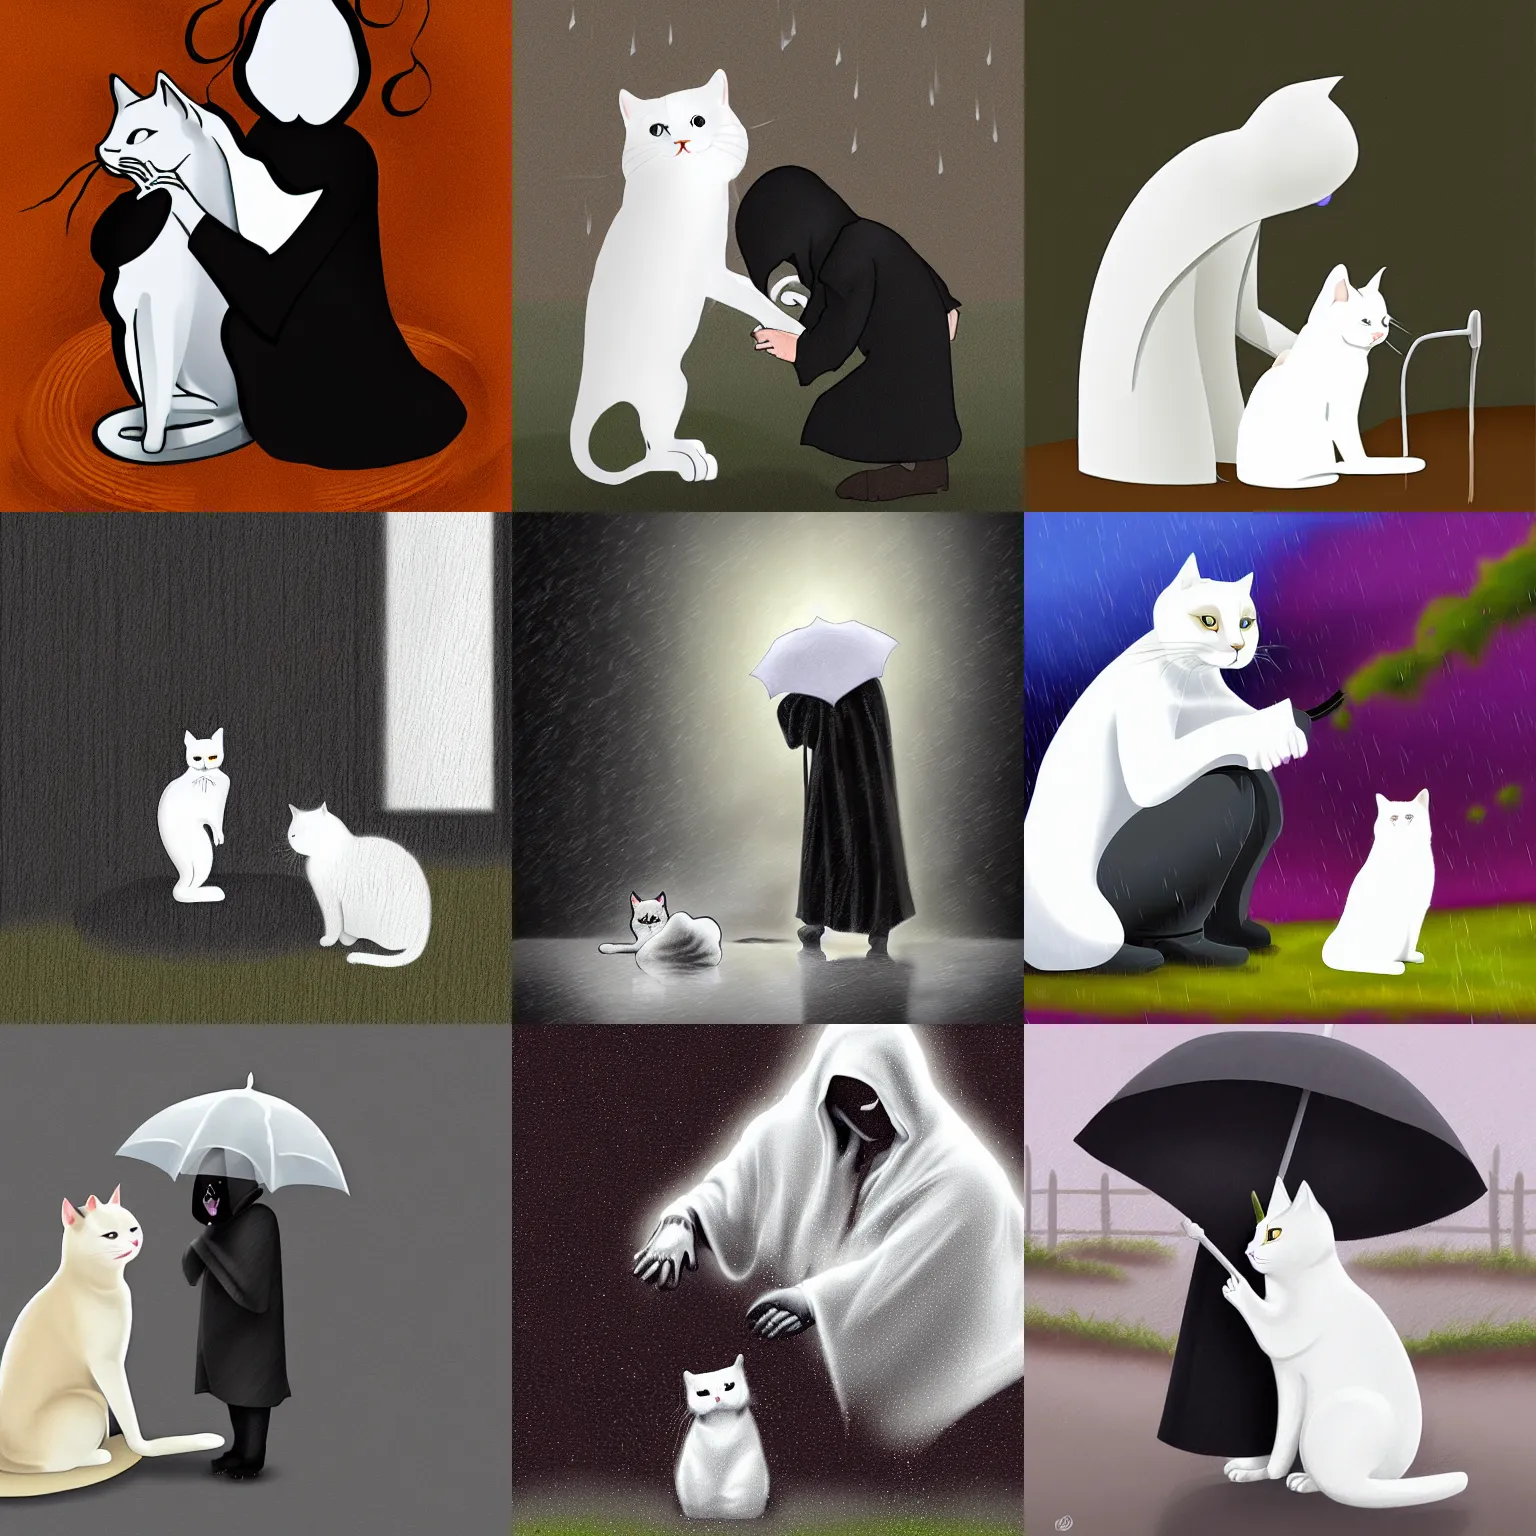 Prompt: the grim reaper petting a white cat under the rain, digital art